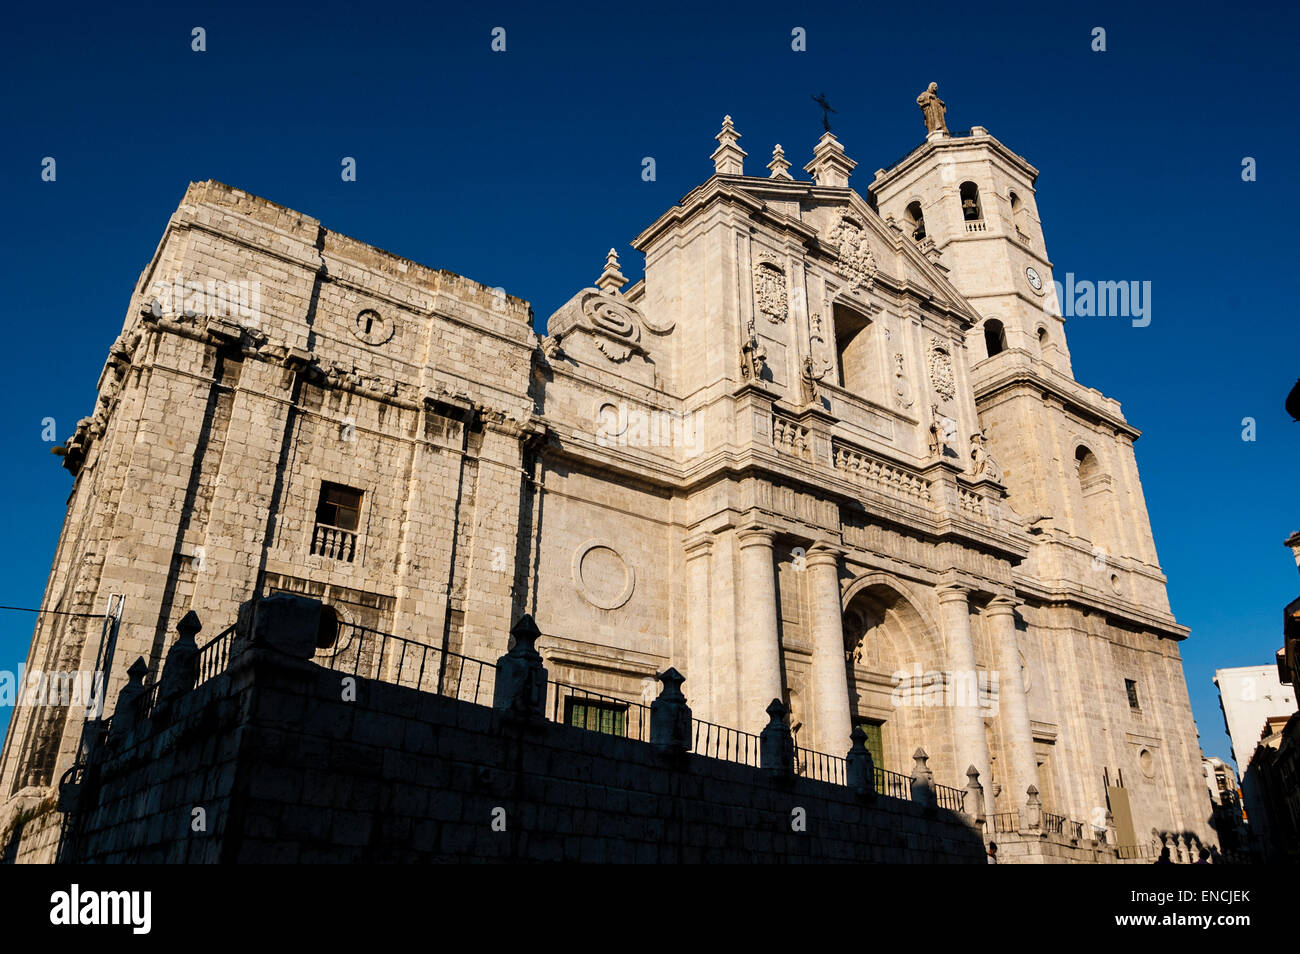 Kathedrale von Valladolid, Kathedrale unserer Lieben Frau von der Himmelfahrt, Kathedrale von Nuestra Señora de la Asunción, Valladolid, Castilla y León, Spanien Stockfoto